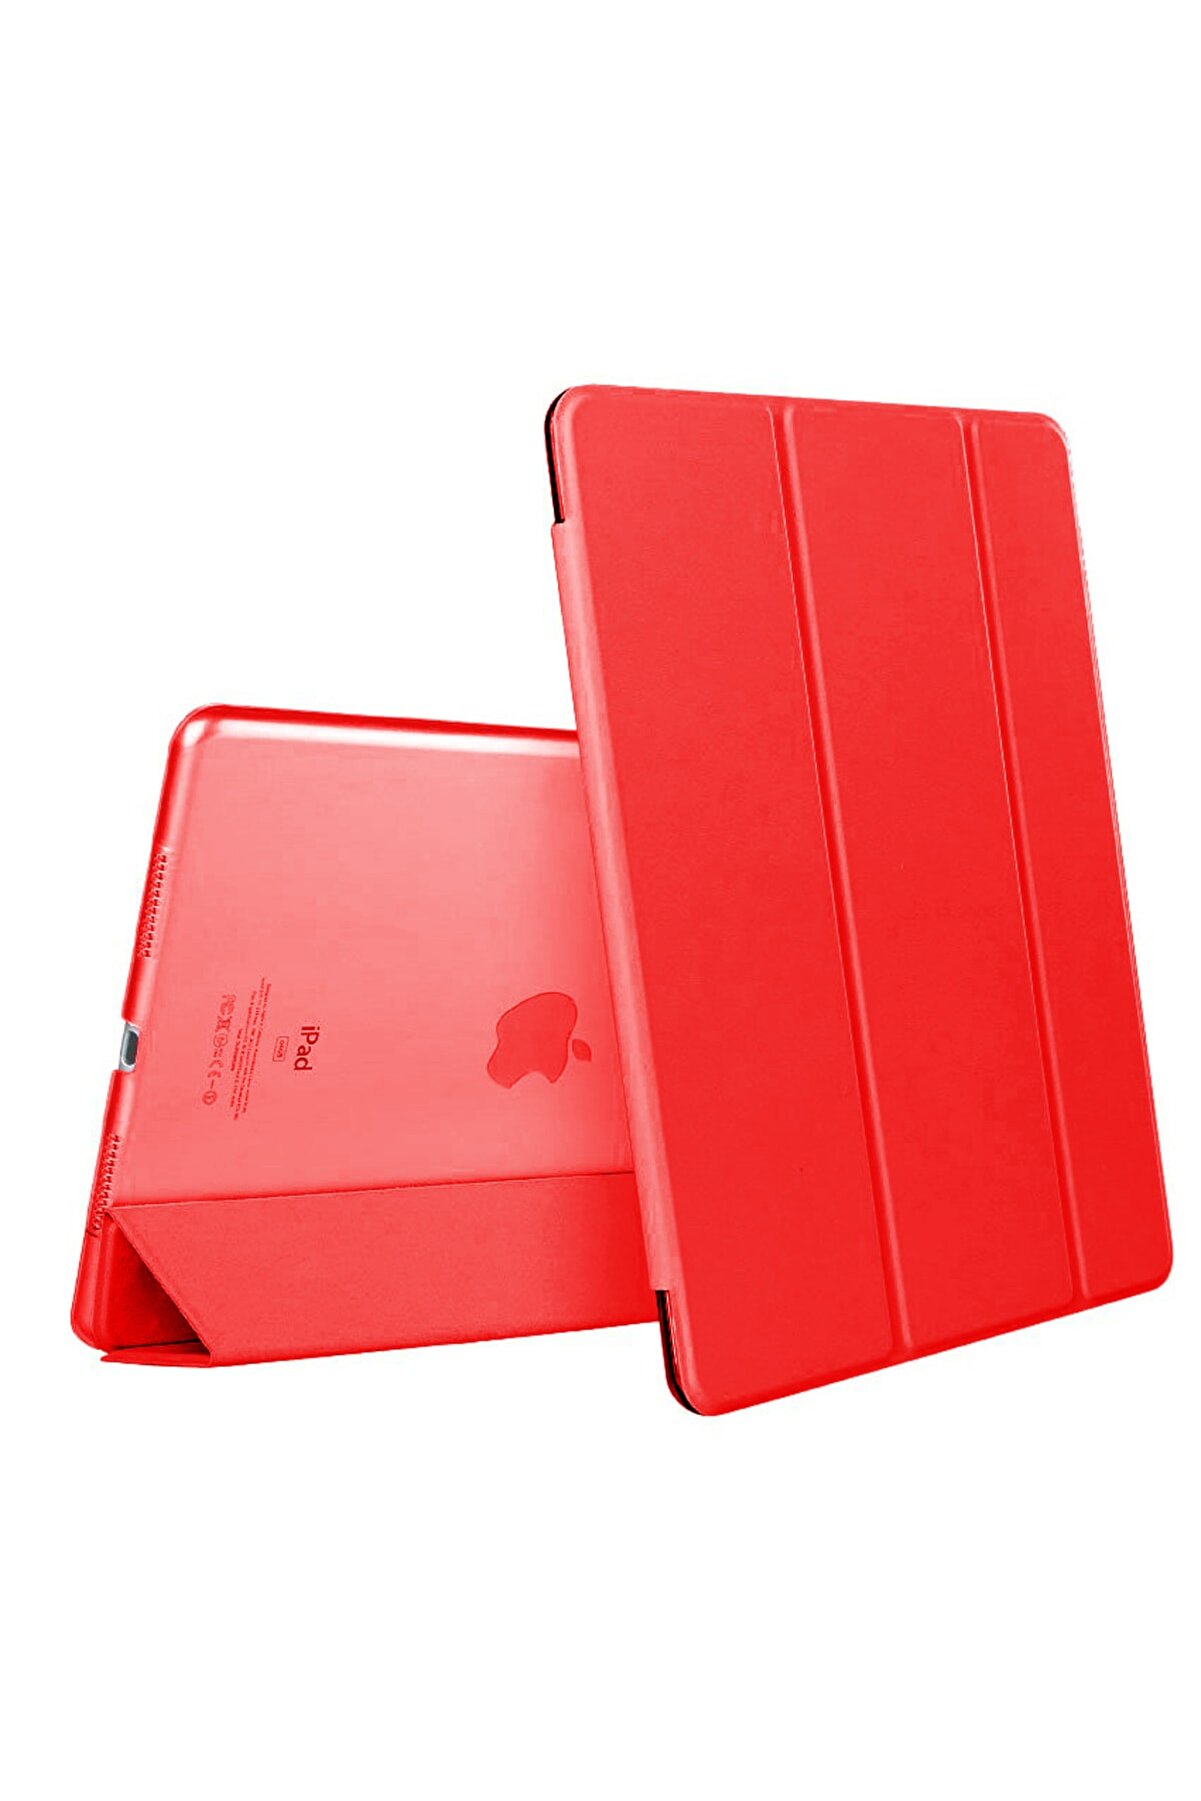 Microsonic Apple Ipad Air 3 10.5'' 2019 (a2152-a2123-a2153-a2154) Smart Case ve Arka Kılıf Kırmızı